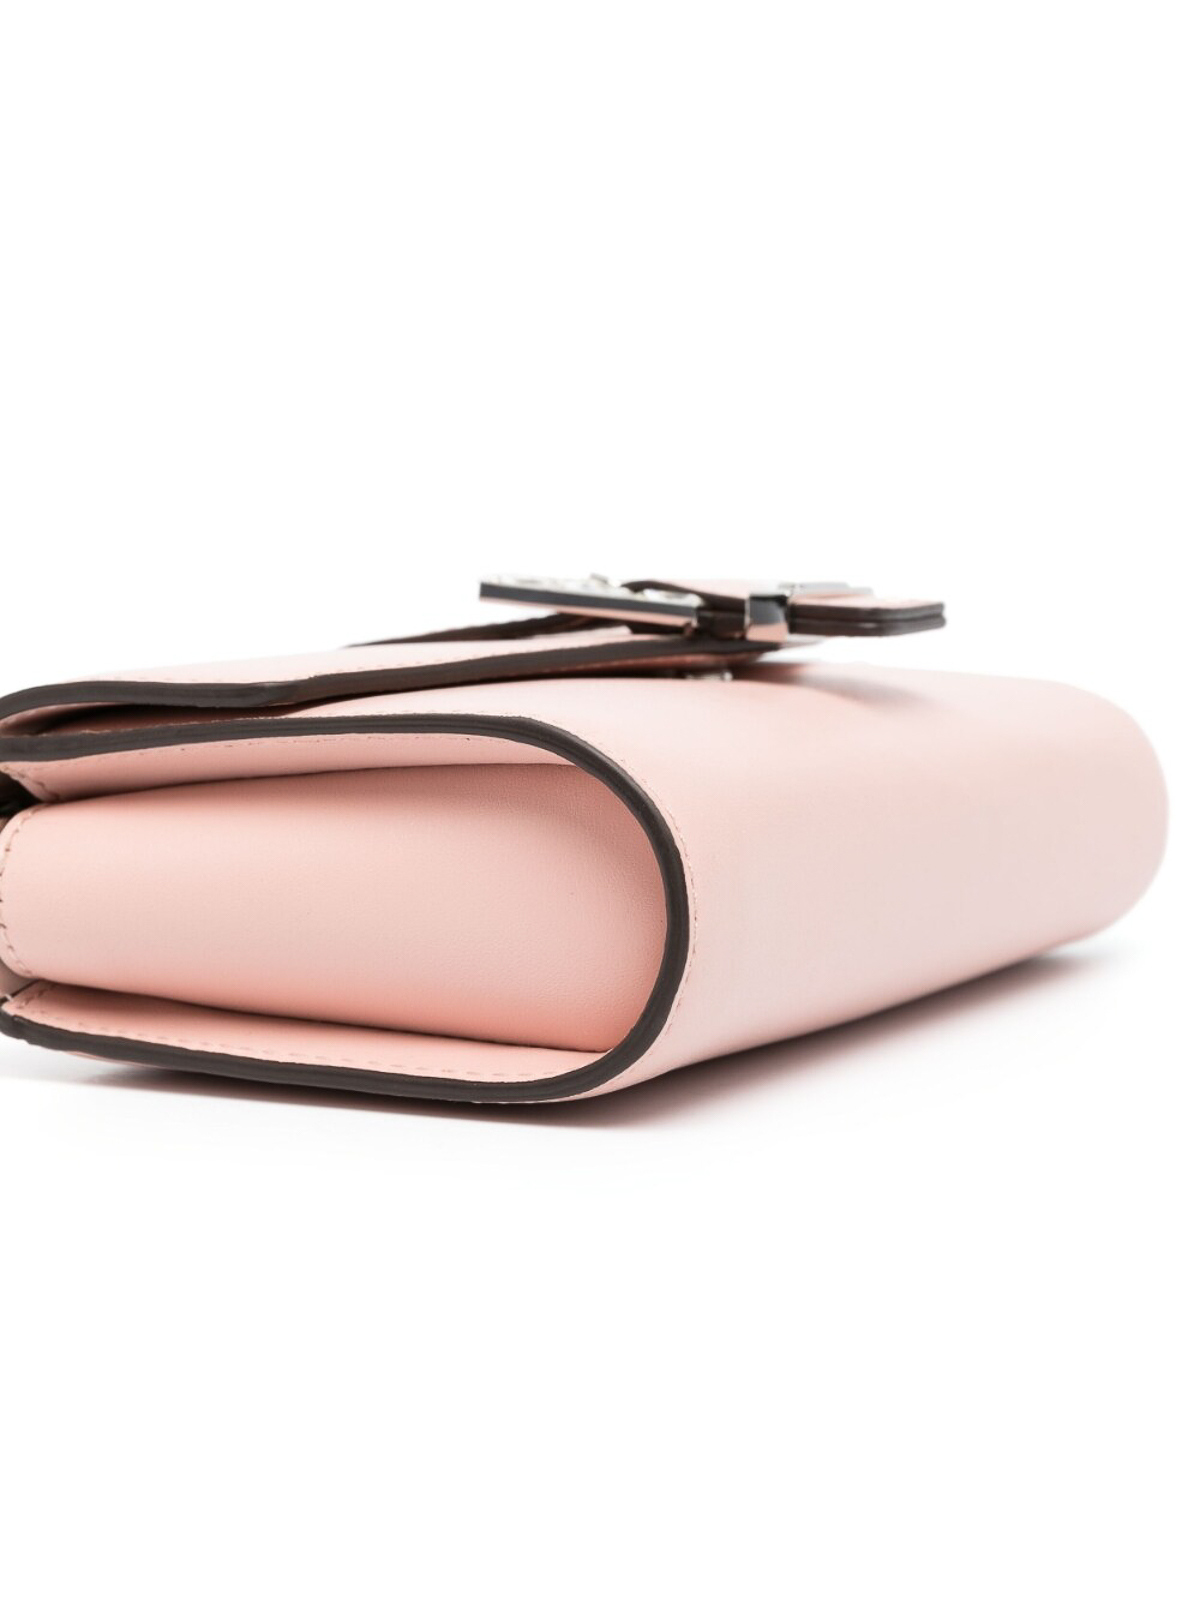 Designer Clutch Bags  Wristlet Purses  Michael Kors